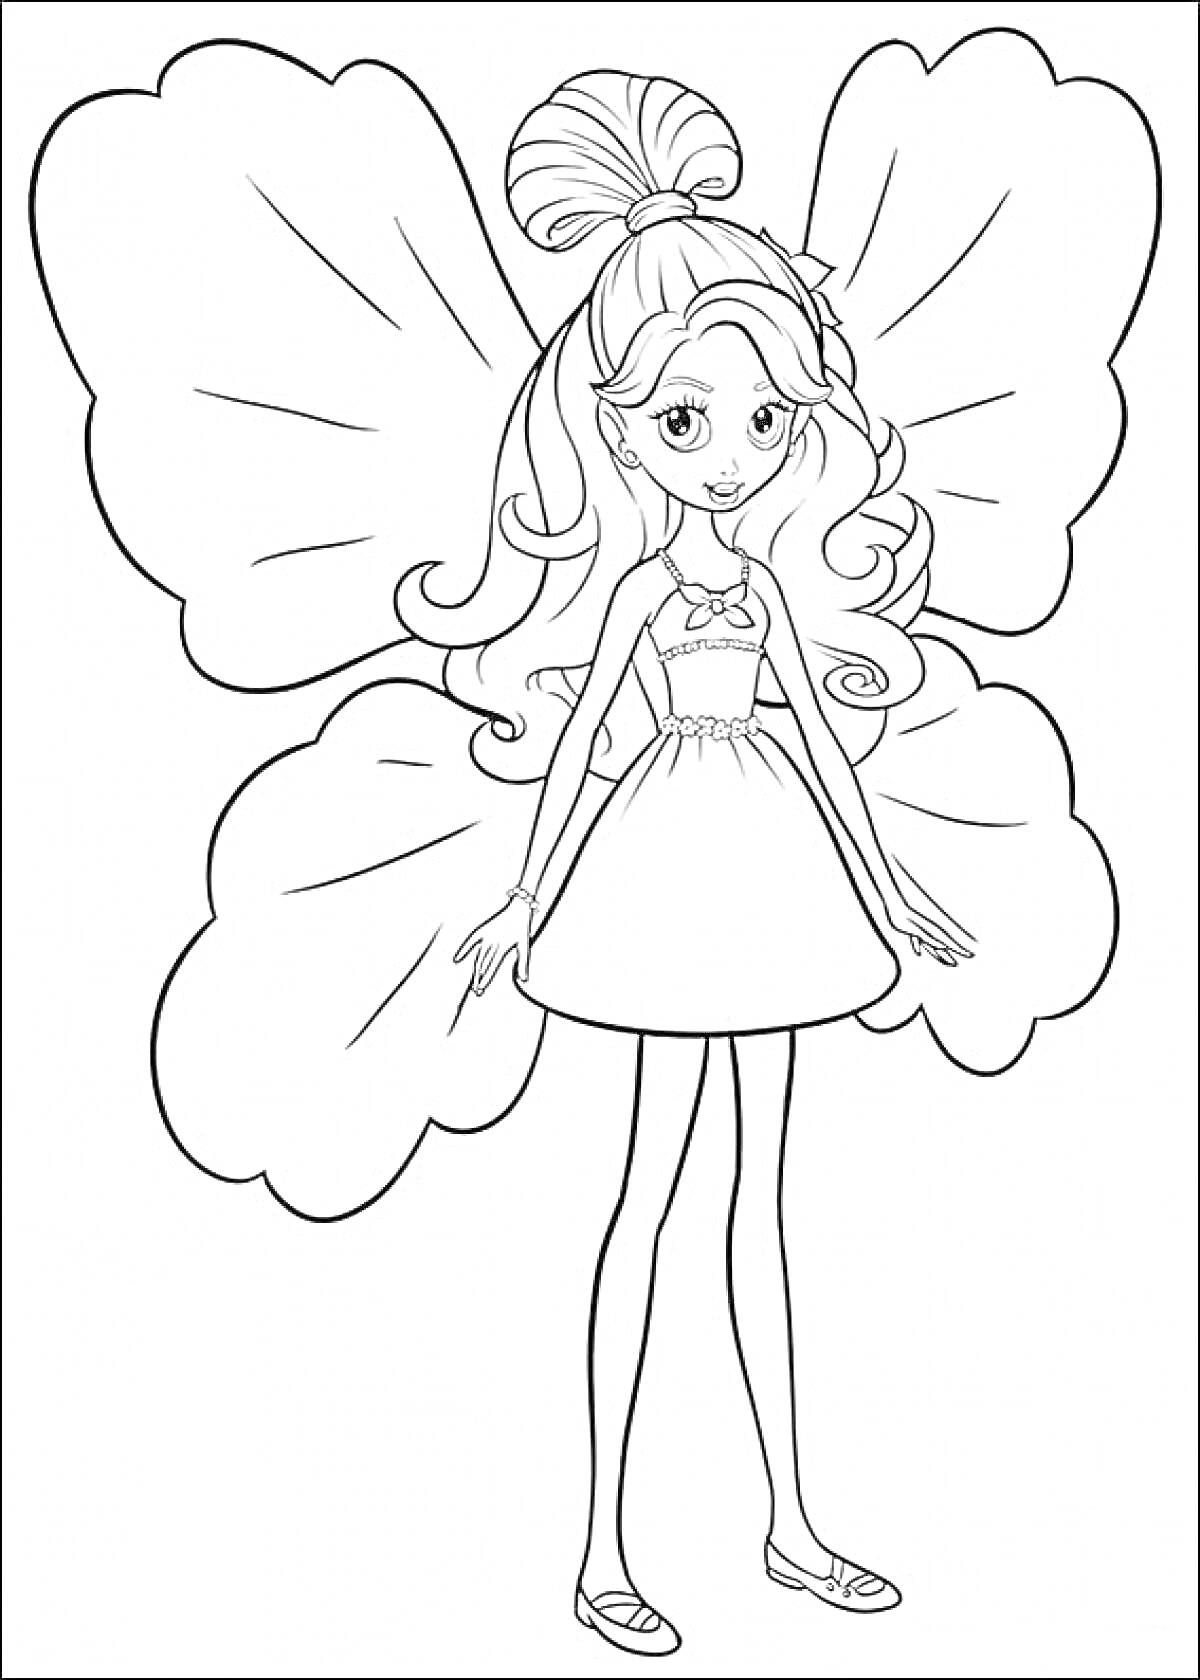 Раскраска Барби Дюймовочка с большими крыльями и бантом на голове